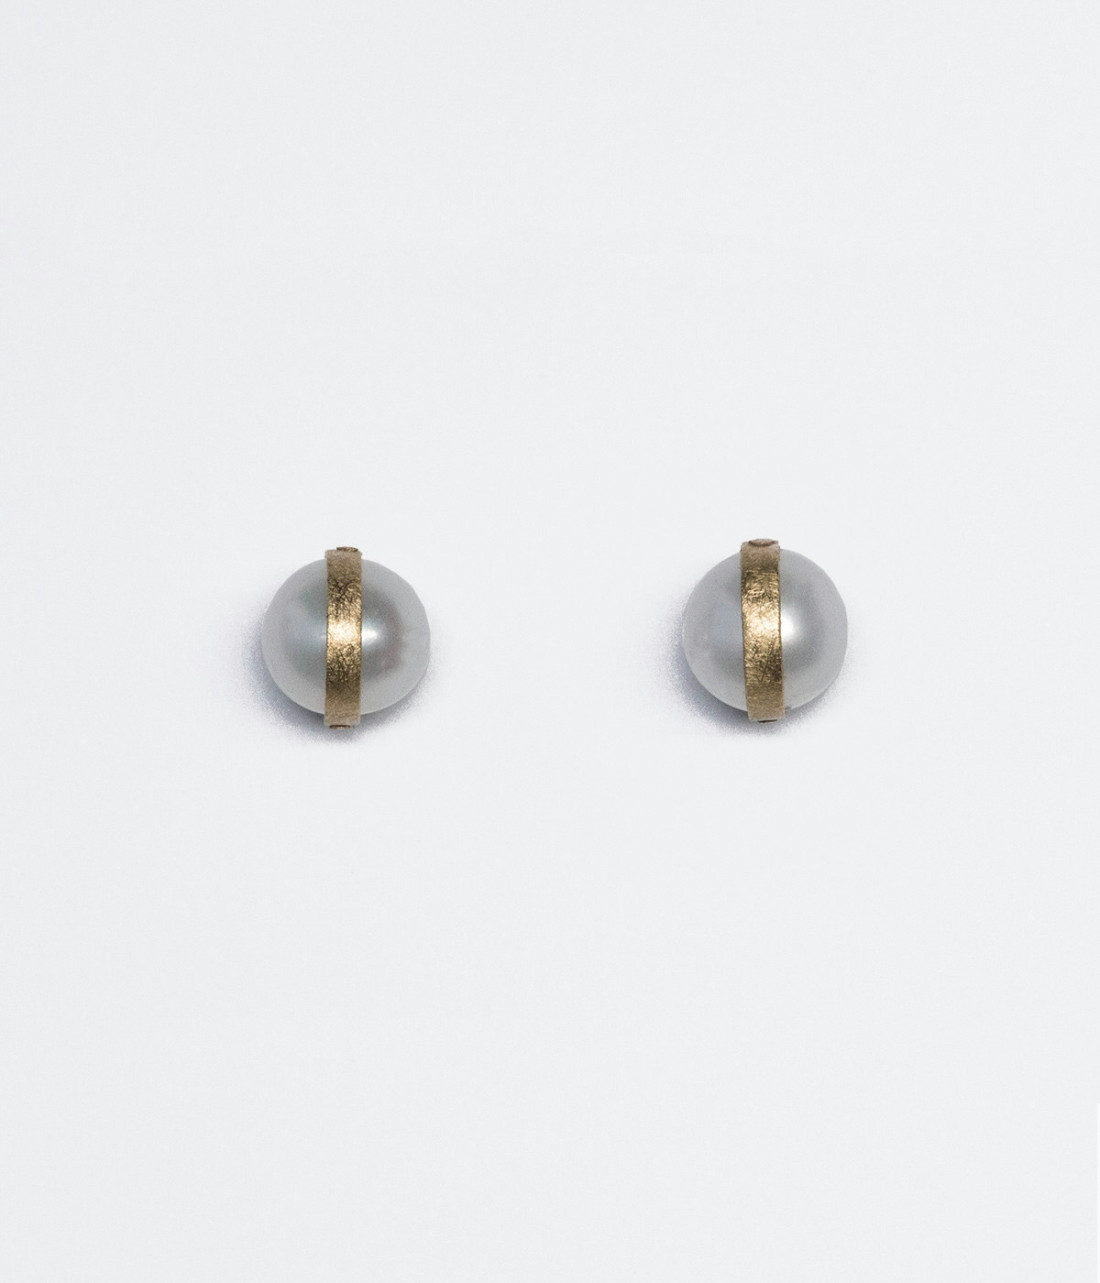 Abrázame small earrings